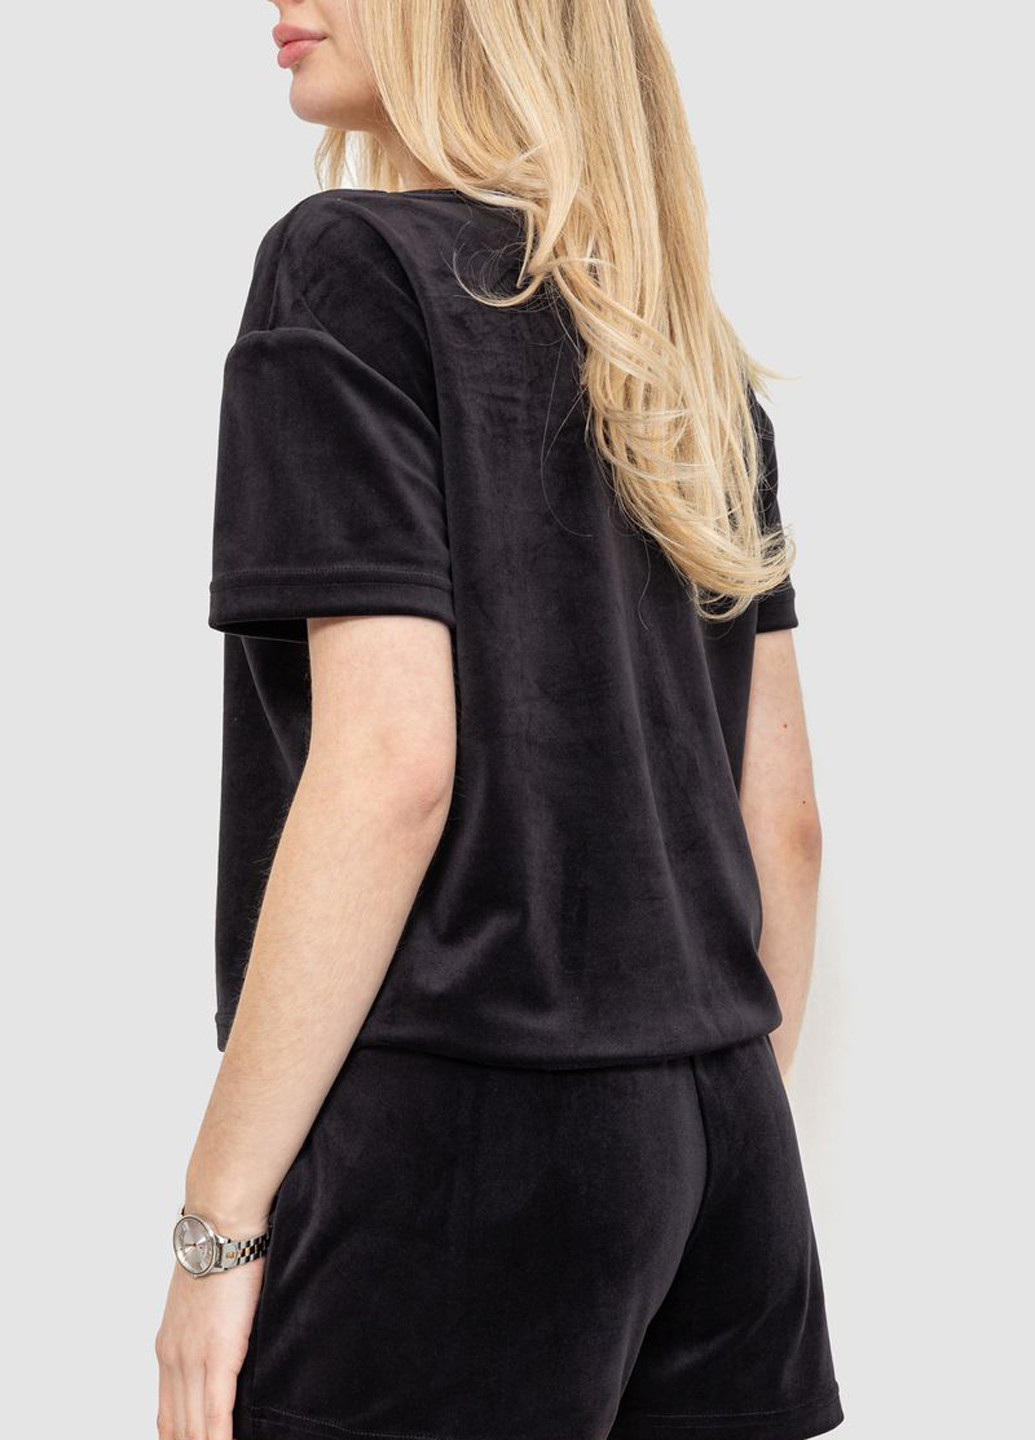 Черная всесезон пижама (футболка, шорты) футболка + шорты Ager